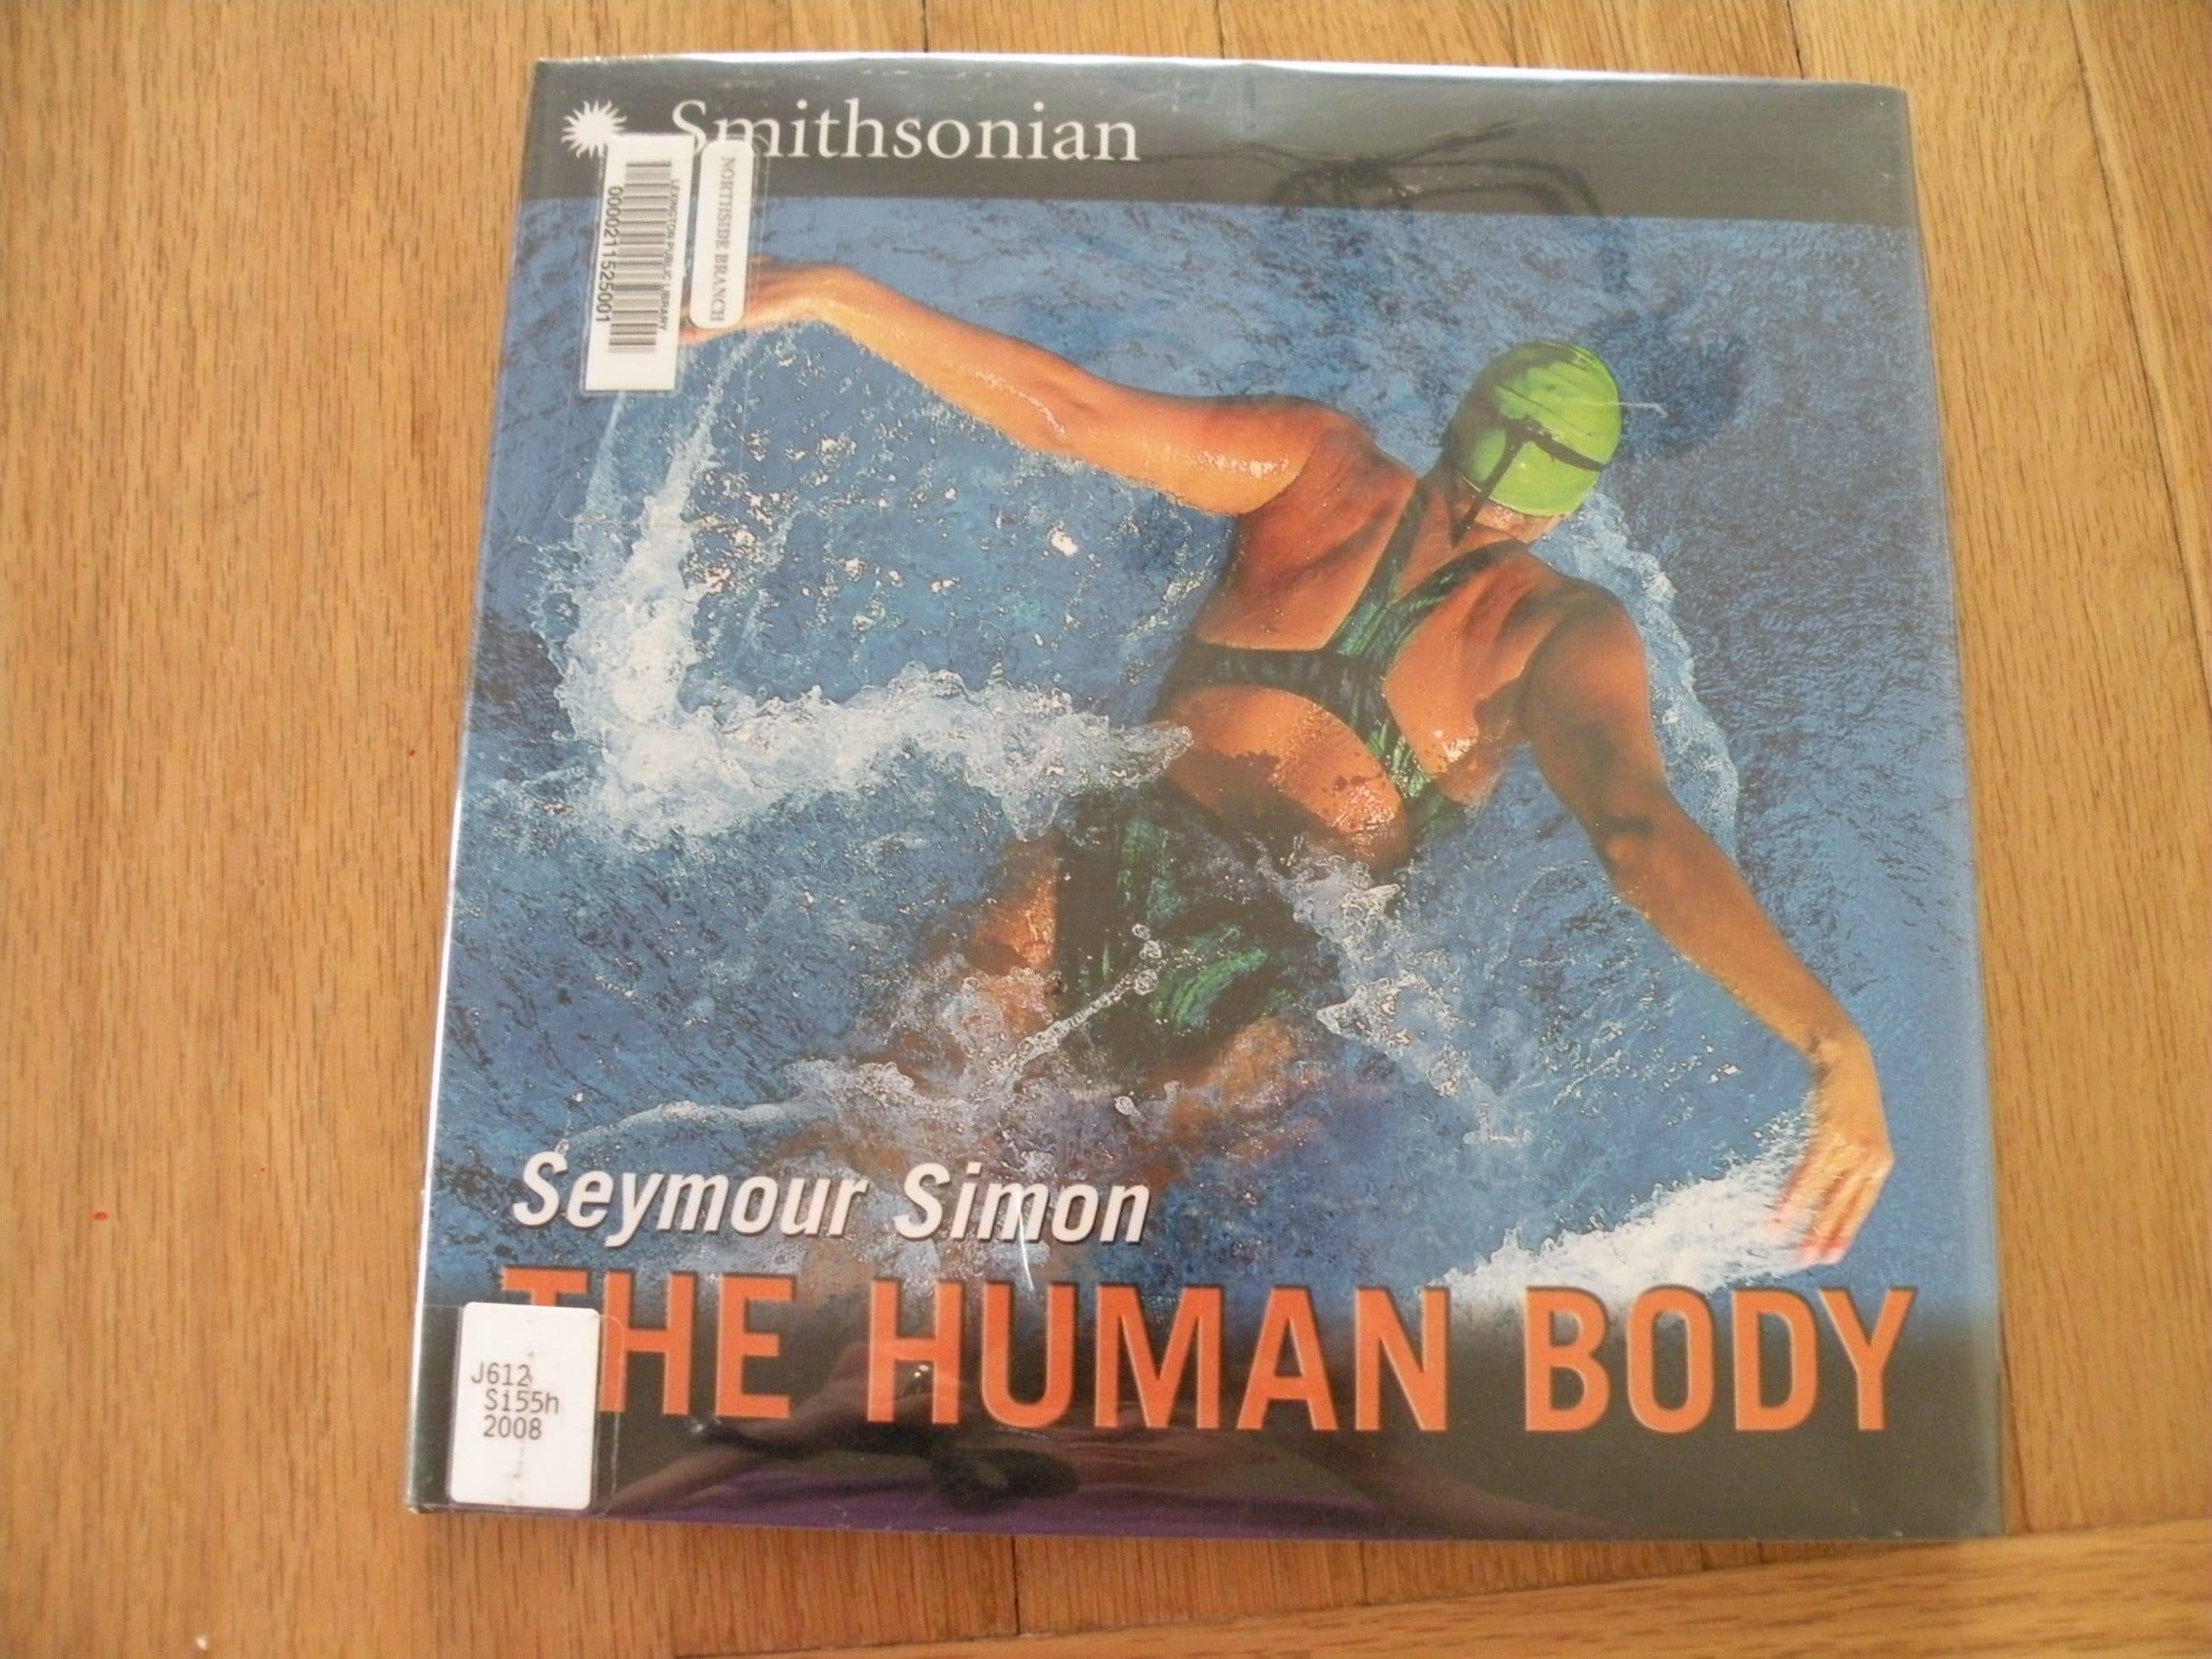 The Human Body by Seymour Simon